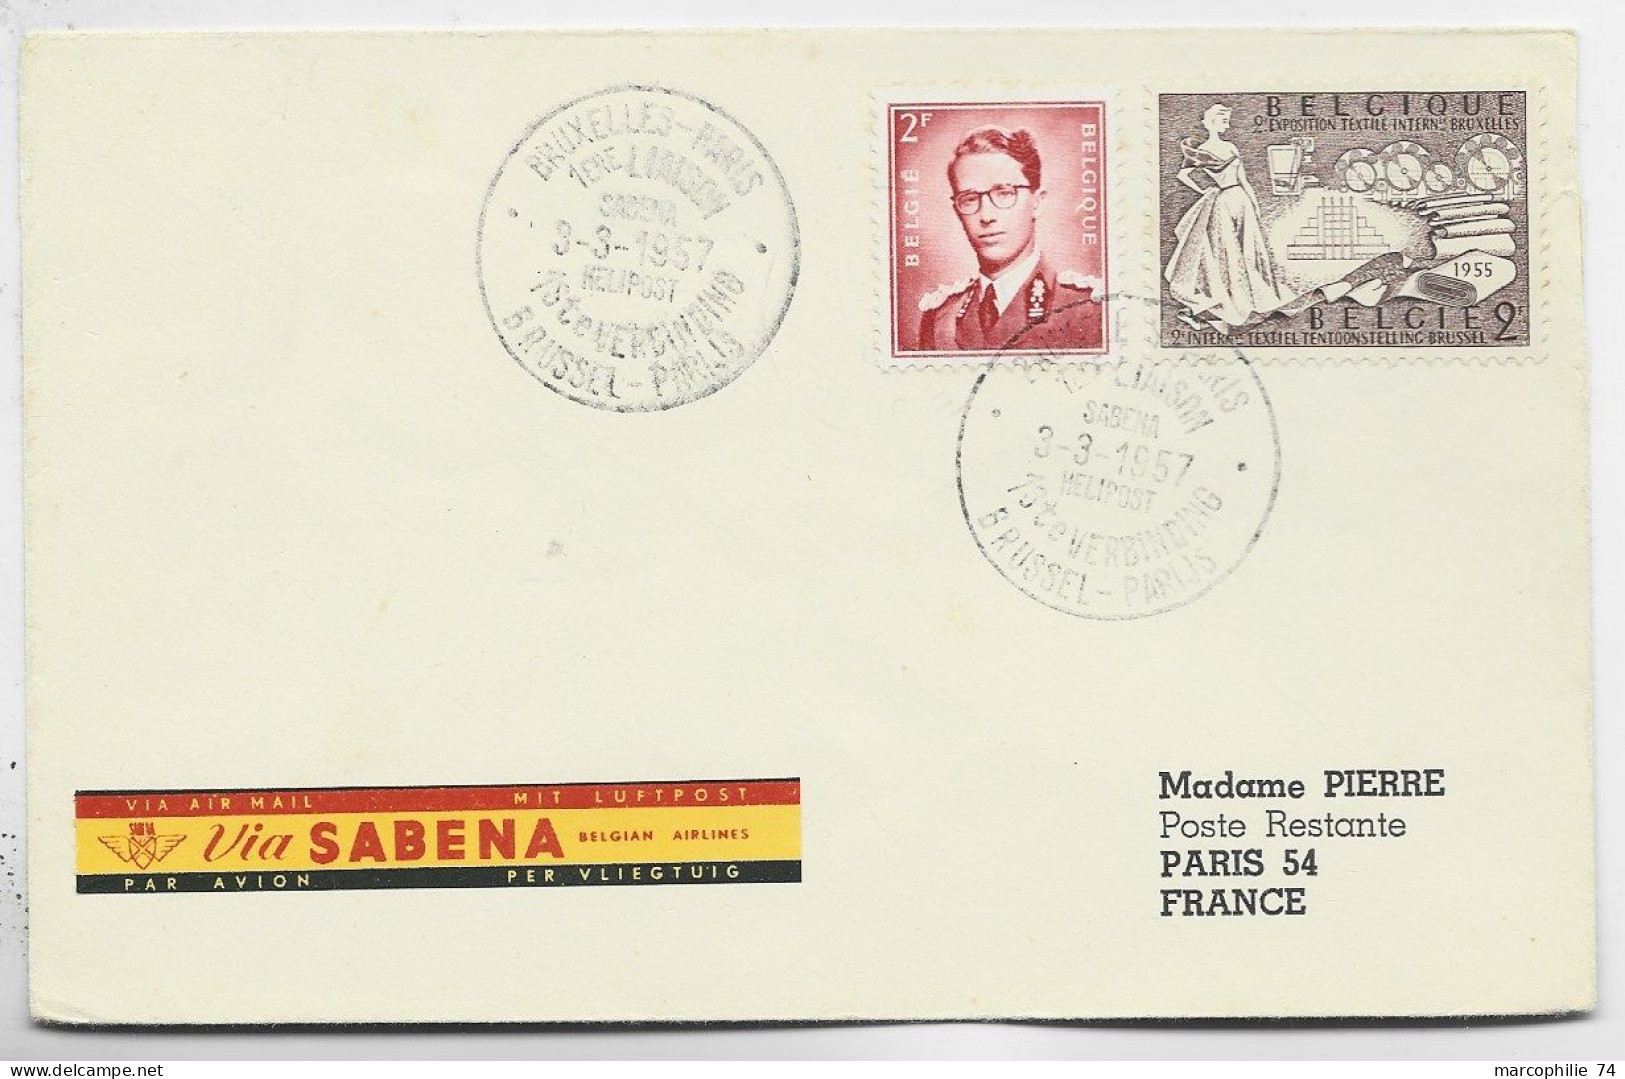 BELGIQUE 2FR+2FR LETTRE COVER VIA SABENA BRUXELLES PARIS 3.3.1957 TO FRANCE - Covers & Documents